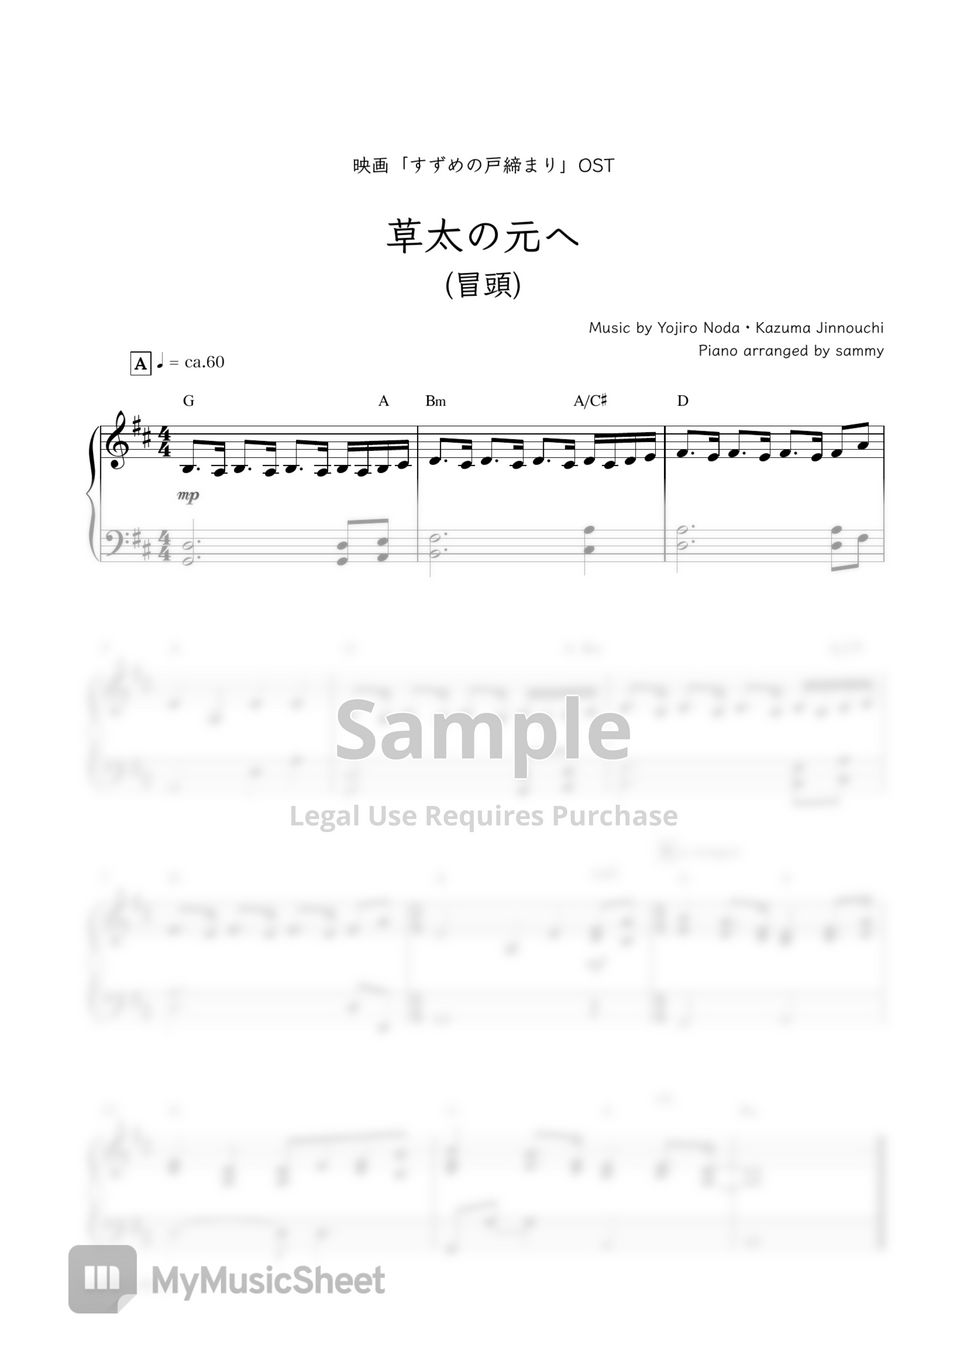 电影《铃芽户缔/铃芽之旅 (すずめの戸締まり)》OST - To be with Sota [short ver.] (草太の元へ) by sammy